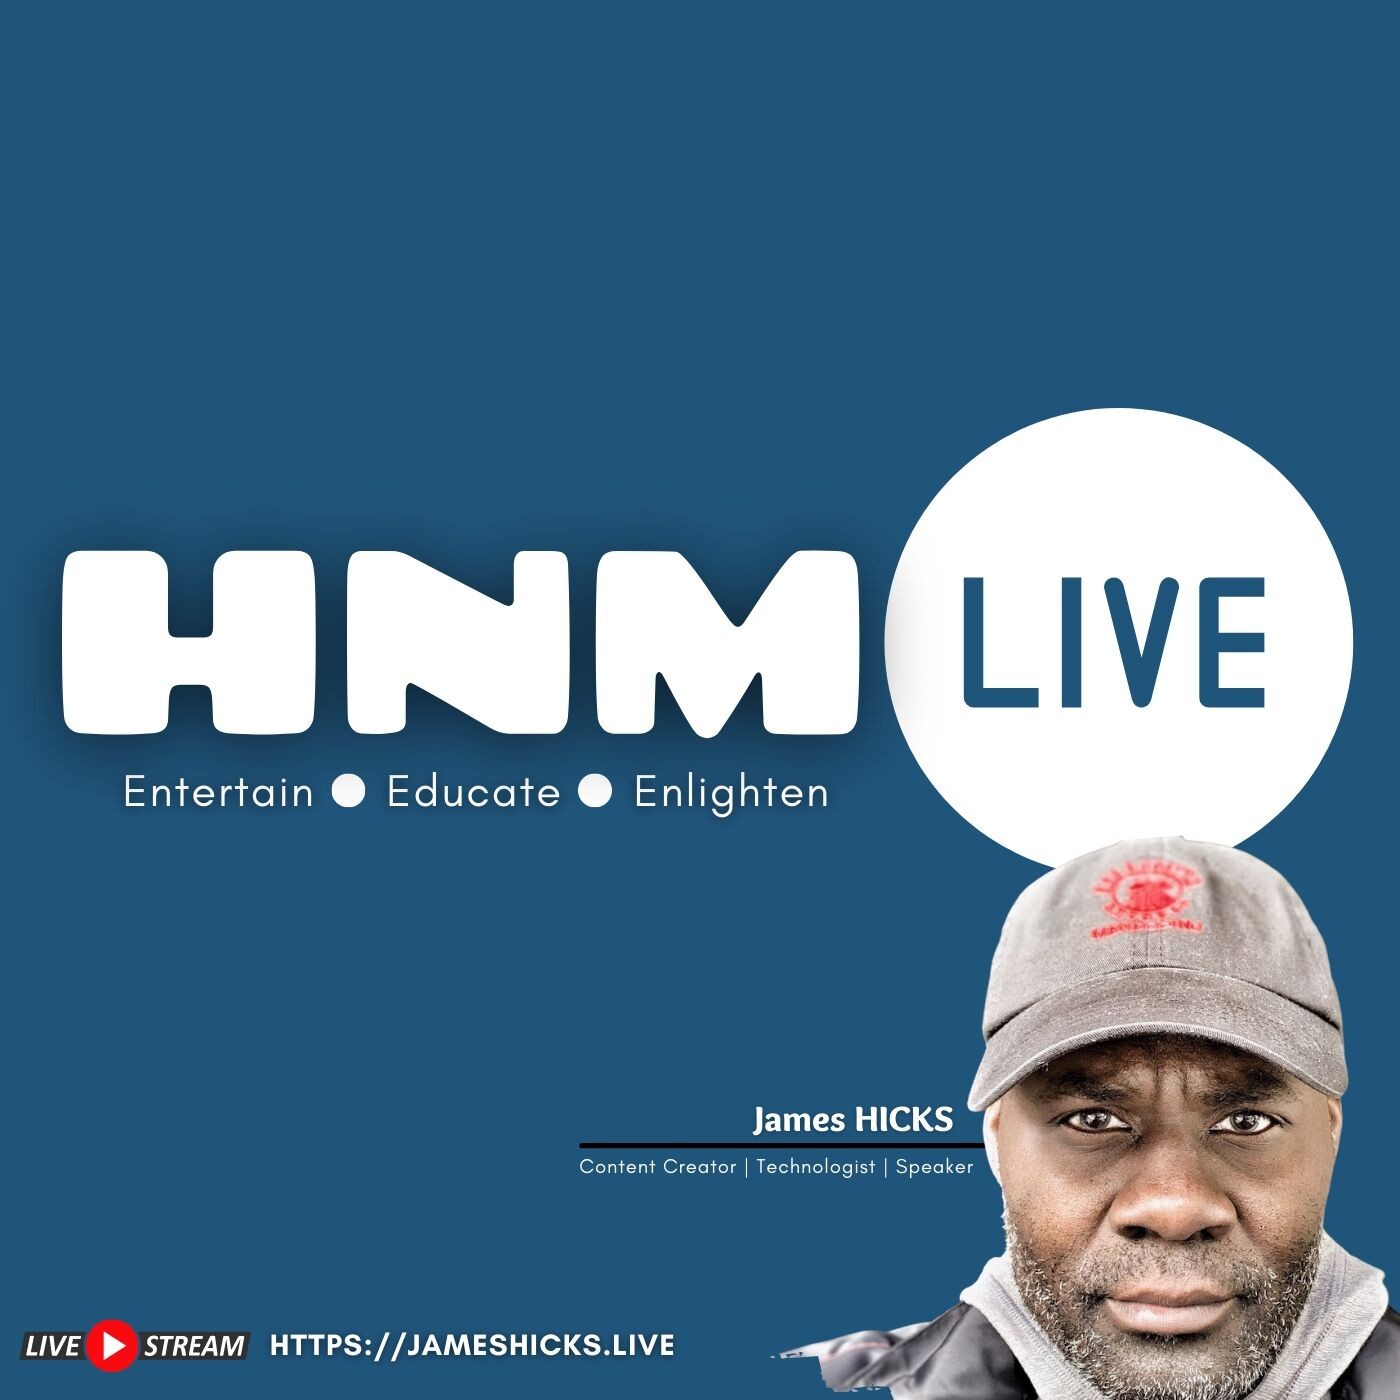 Artwork for podcast HNM Live